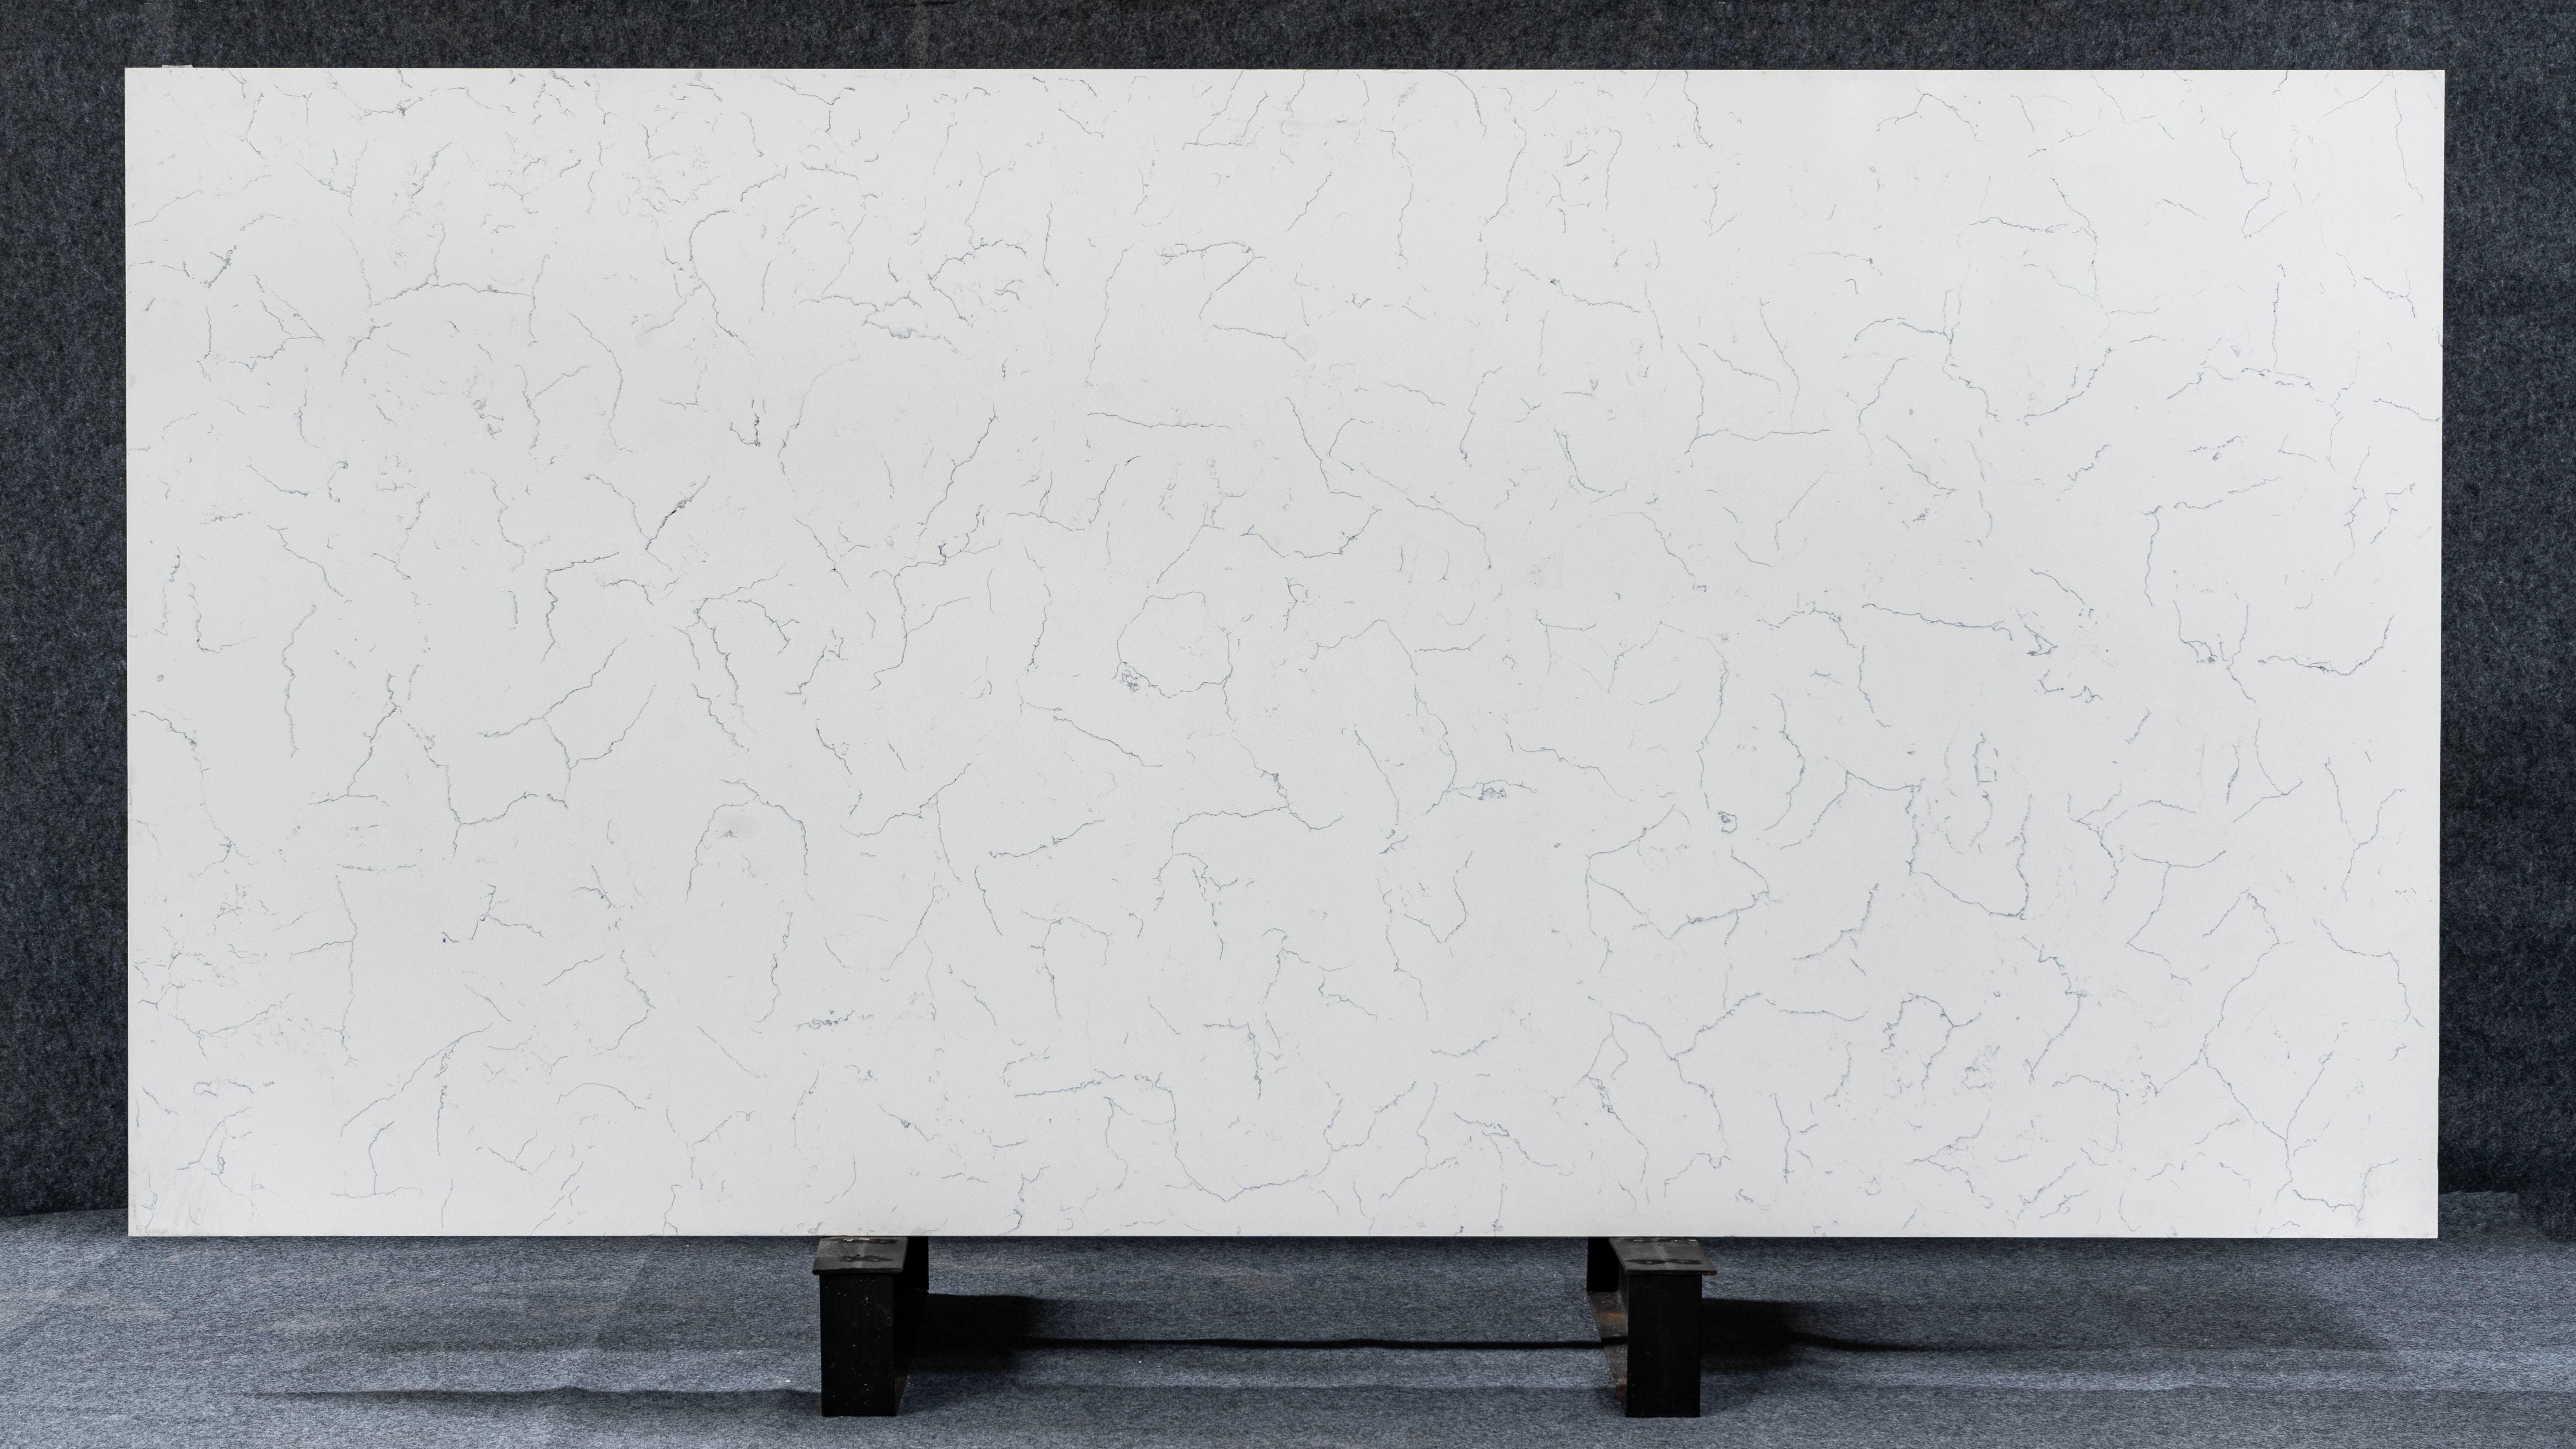  Πέτρα χαλαζία Carrara λευκές jumbos πλάκες για μπλουζάκι μπάνιου 